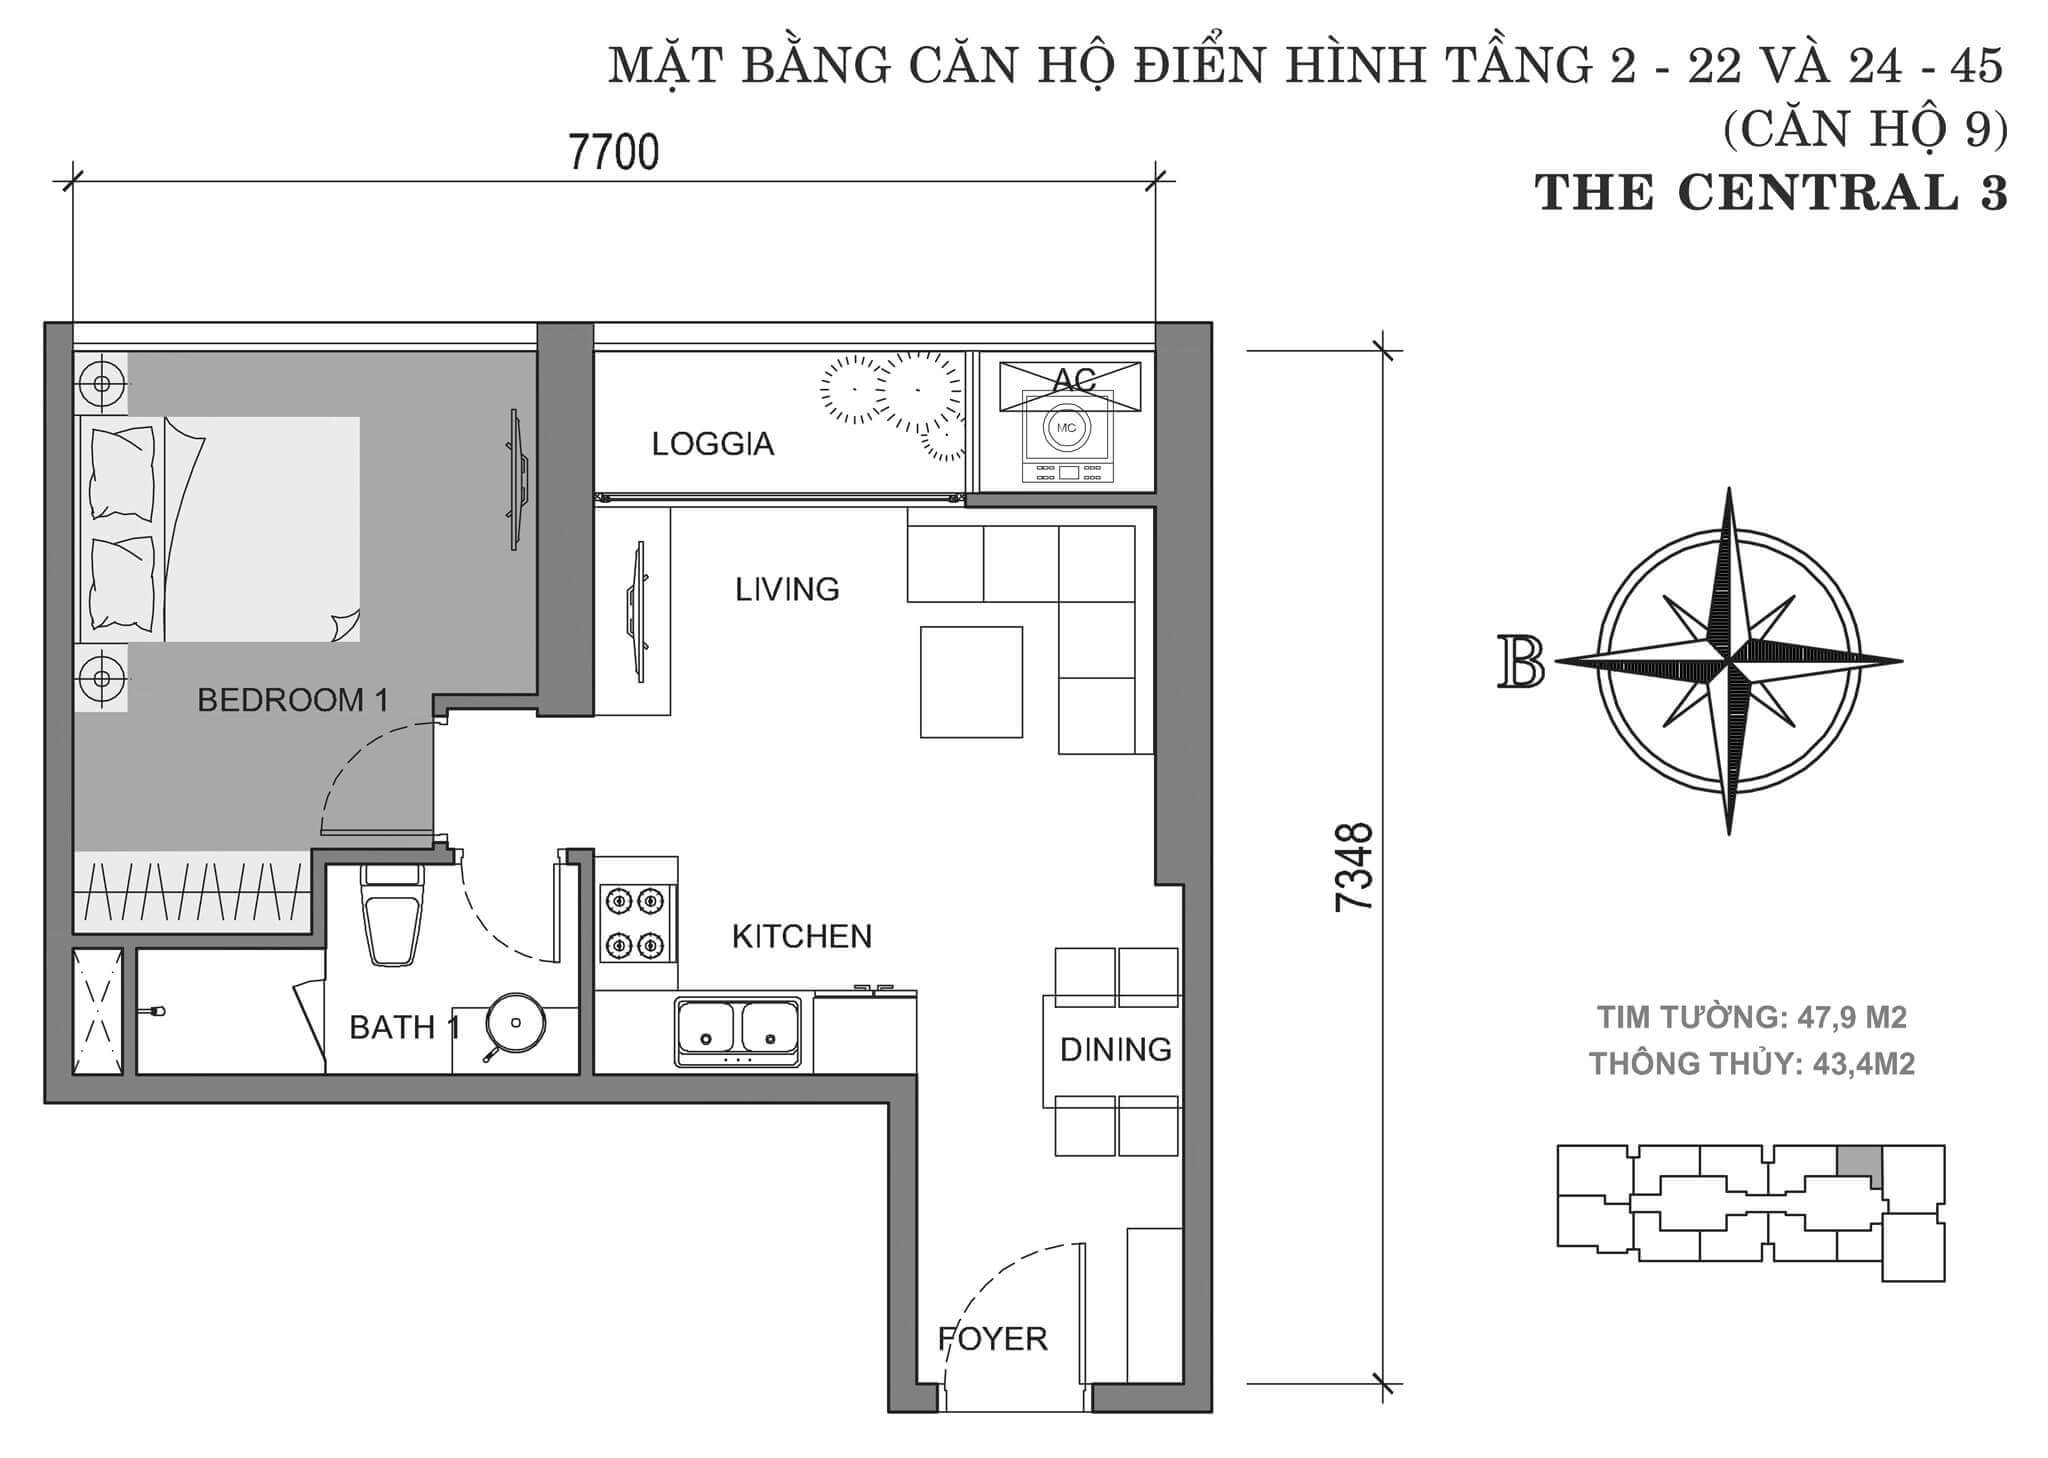 layout căn hộ số 9 tòa Central 3 tầng 2-45  